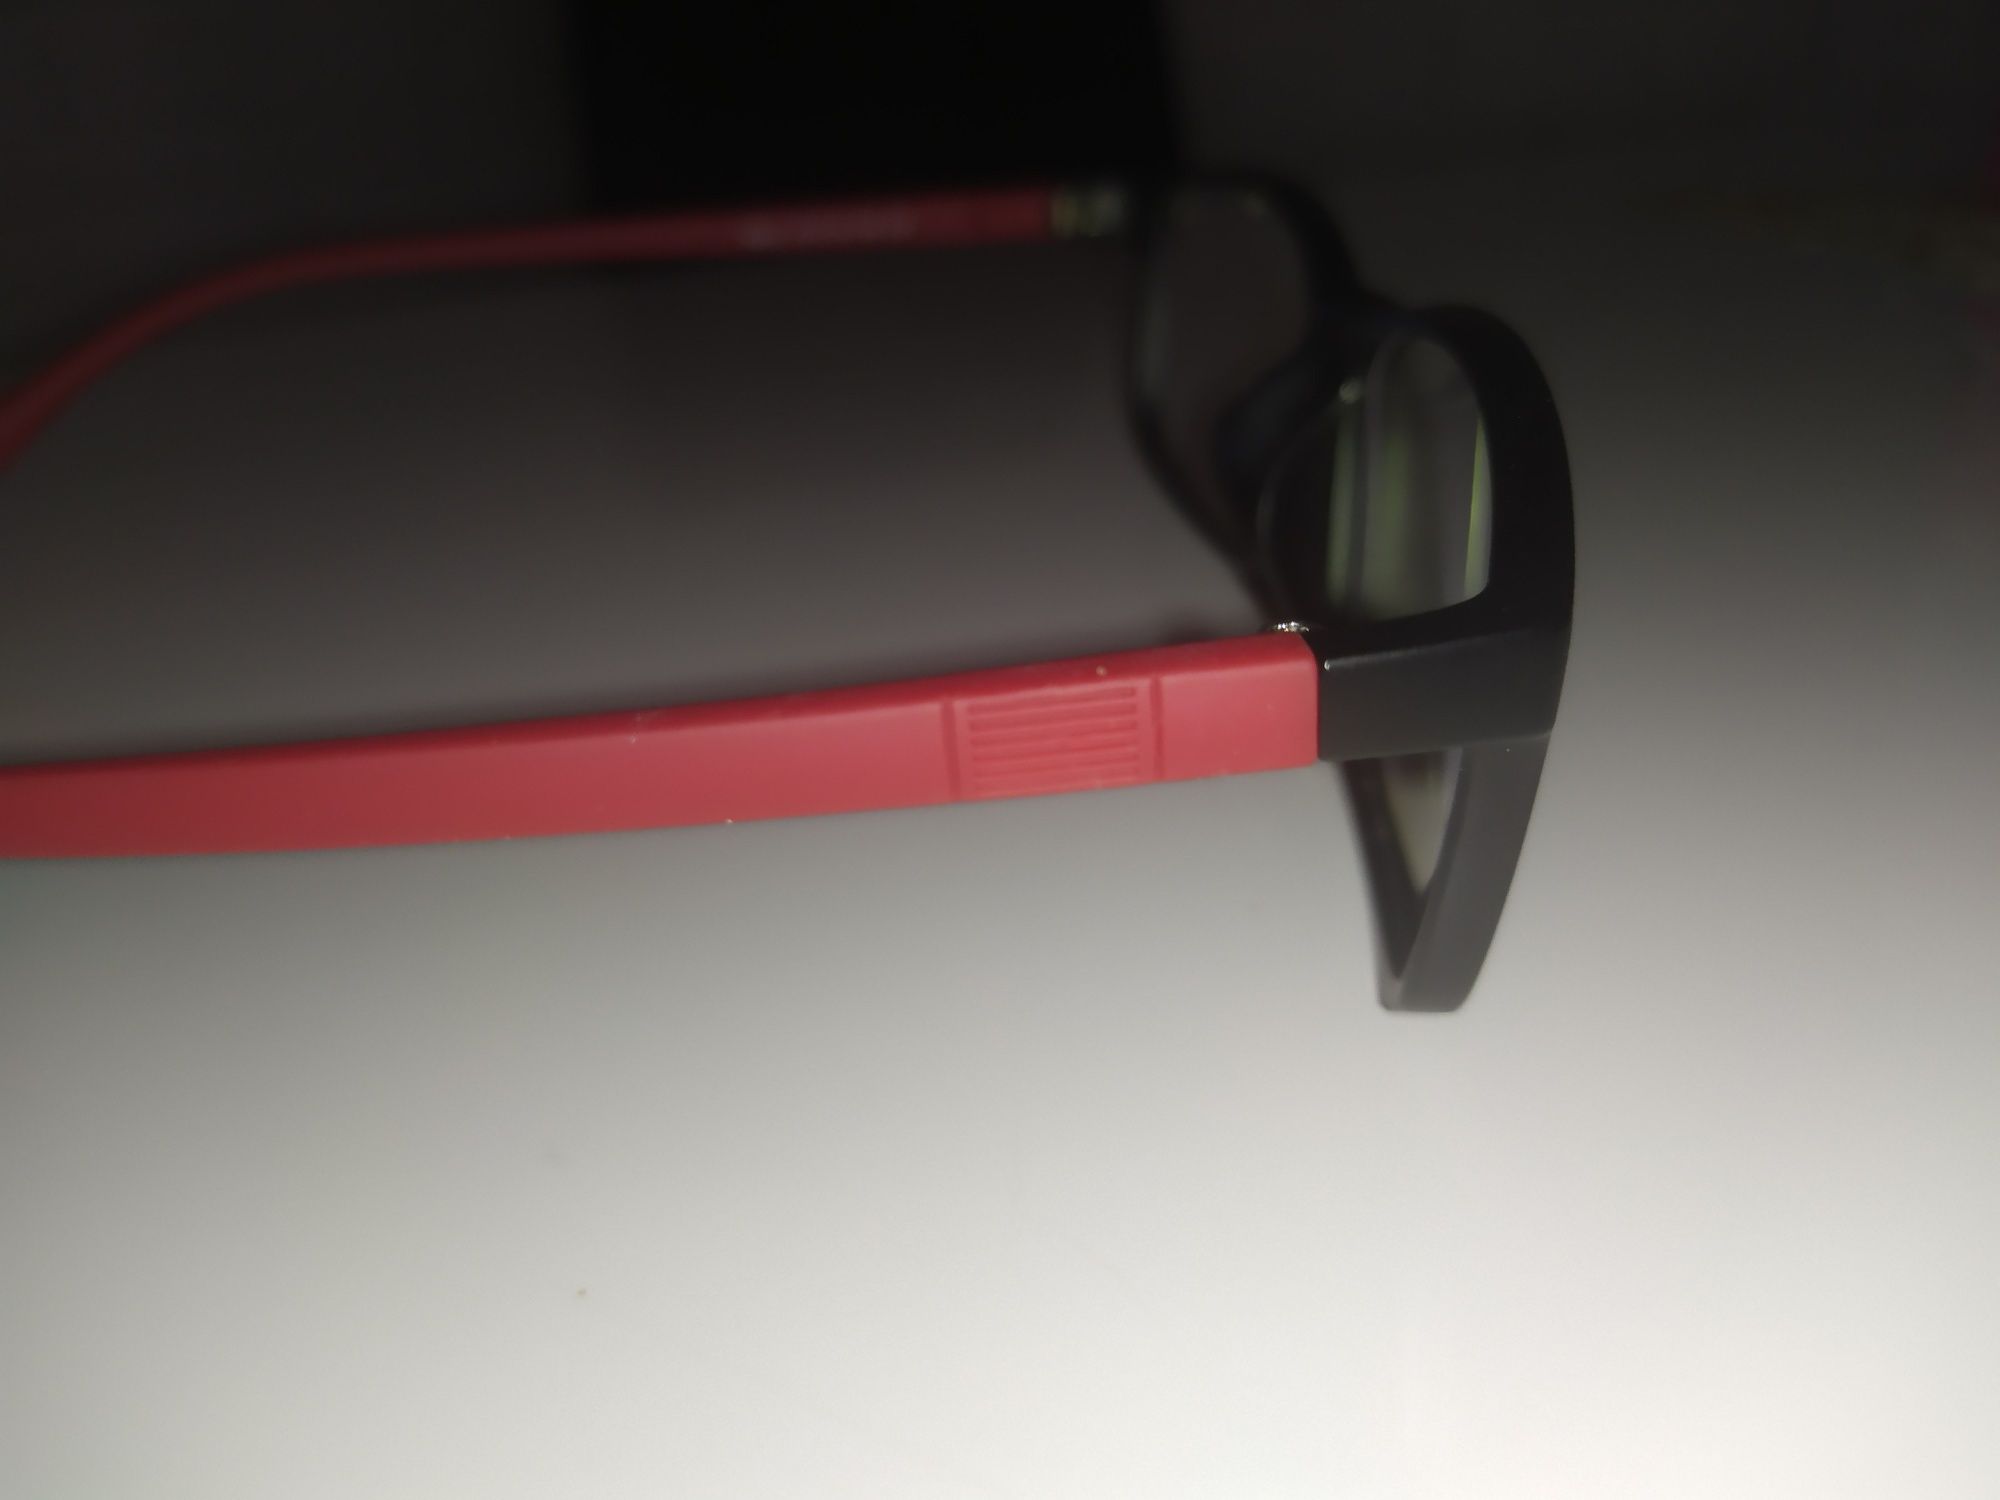 Okulary oprawki korekcyjne unisex 139 mm szerokość nowe